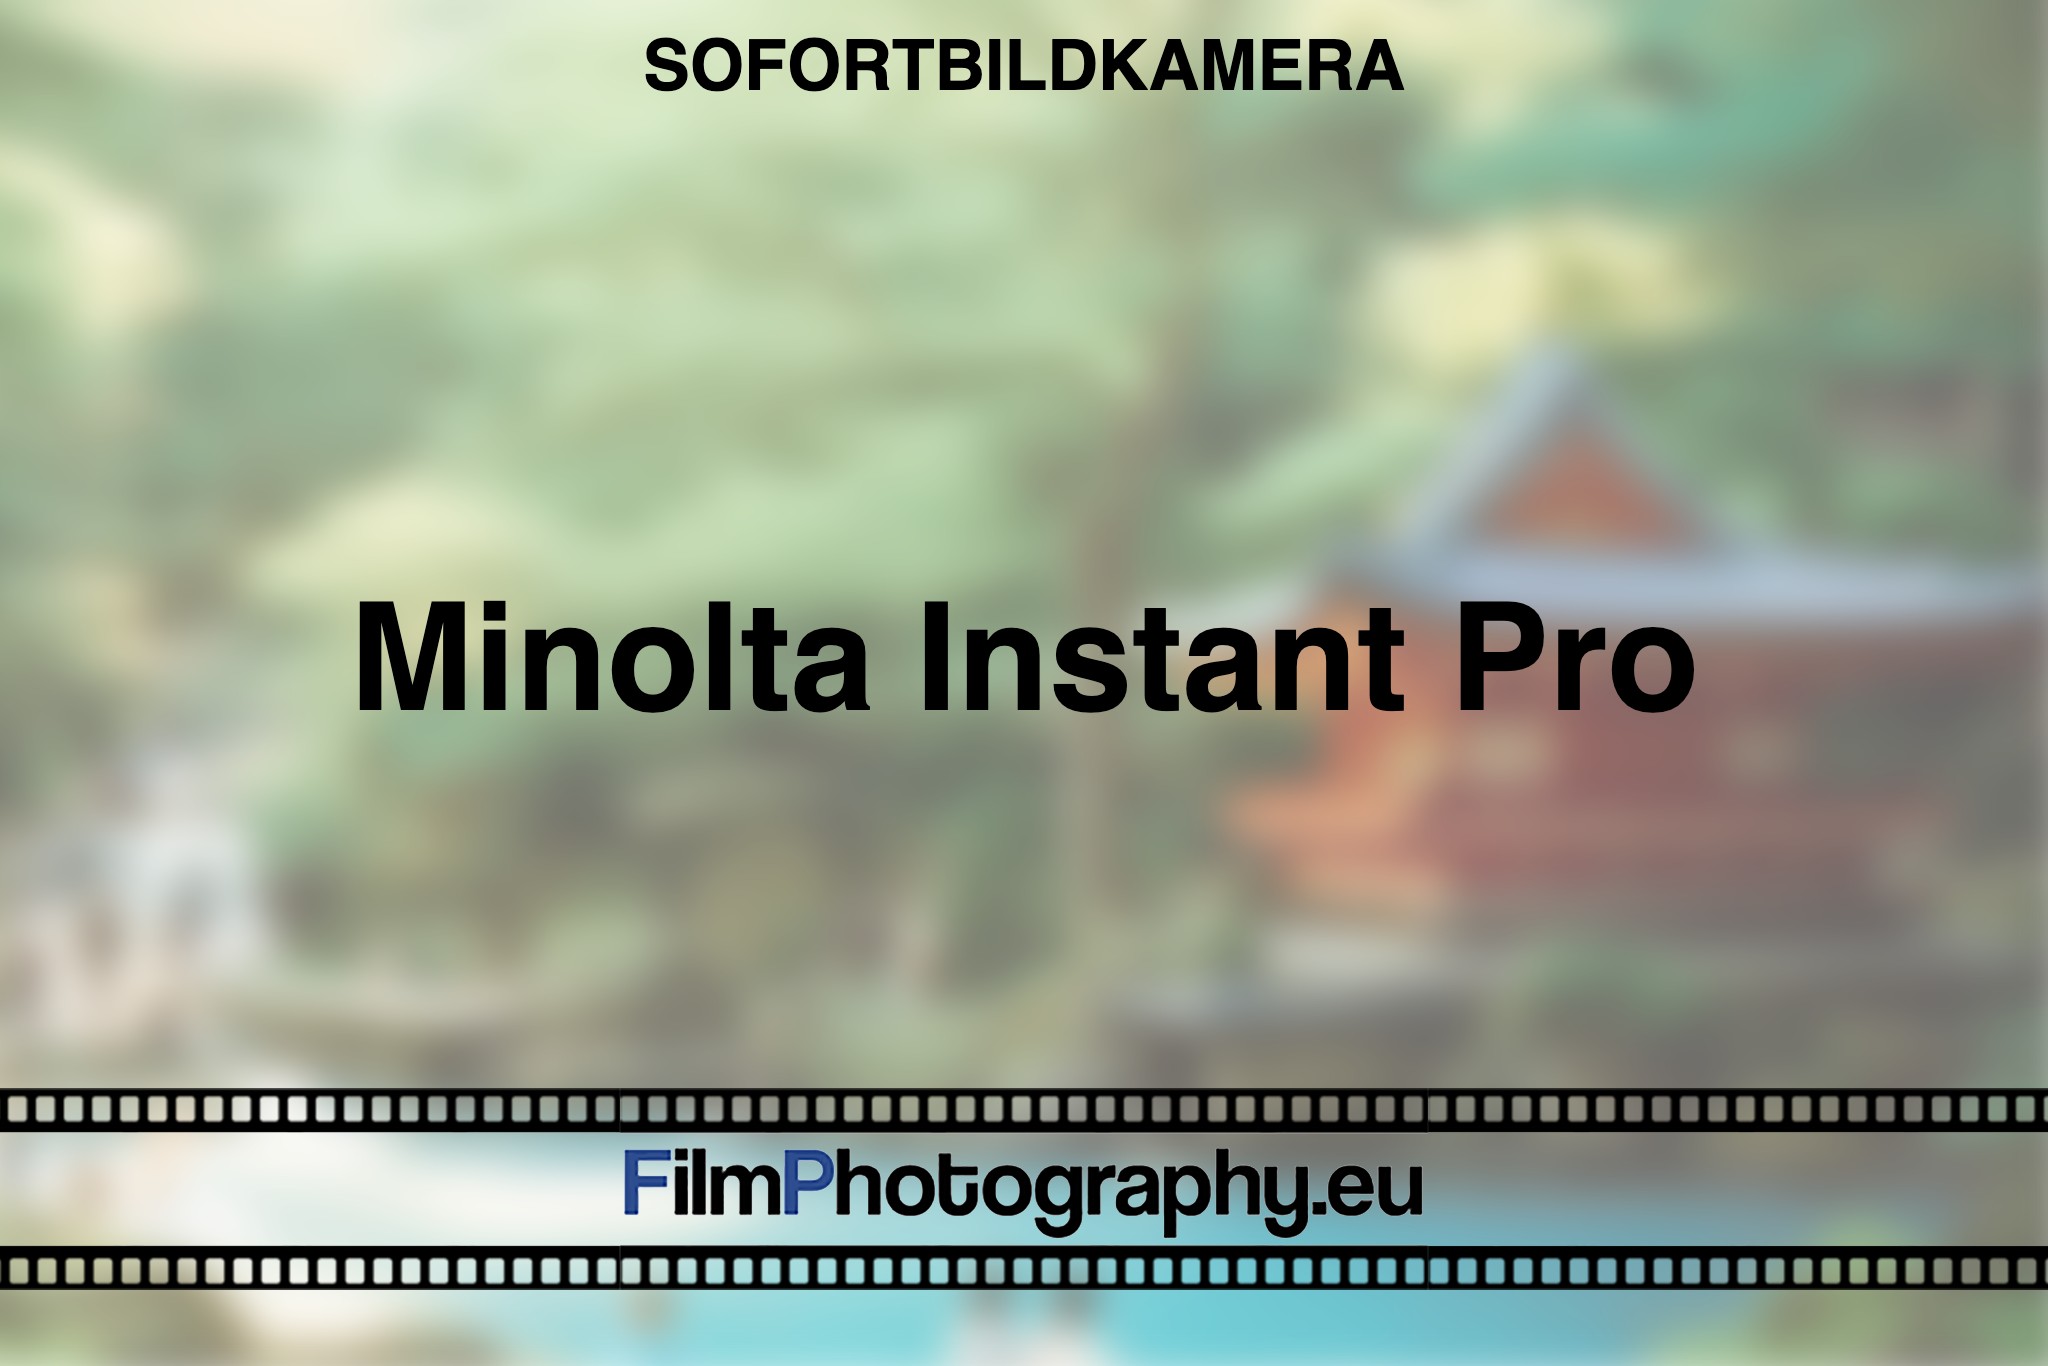 minolta-instant-pro-sofortbildkamera-bnv